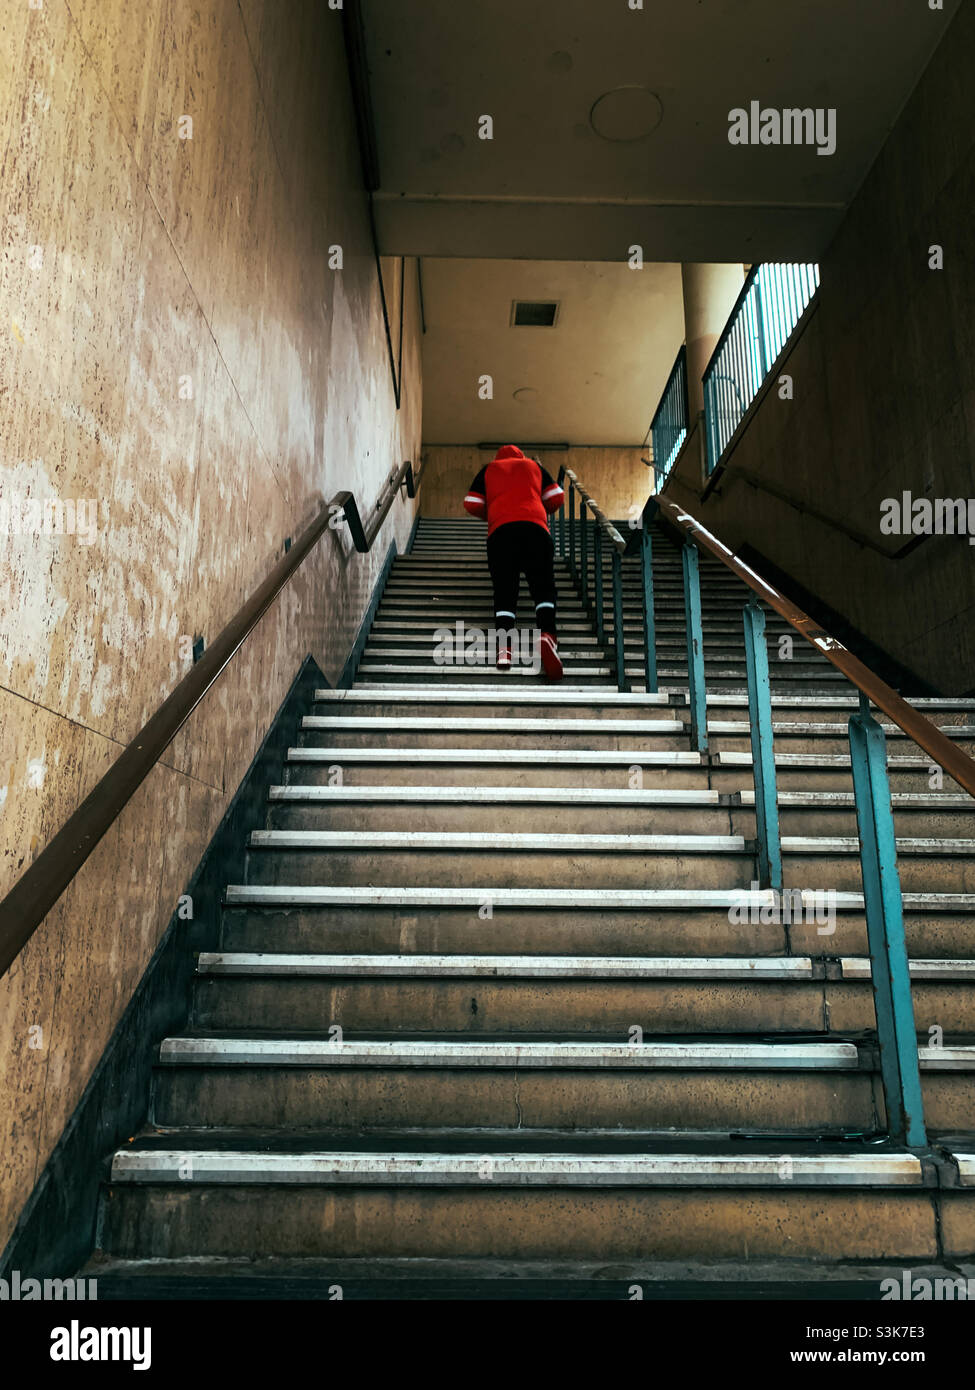 Homme portant un haut rouge marchant sur un ensemble d'escaliers Banque D'Images